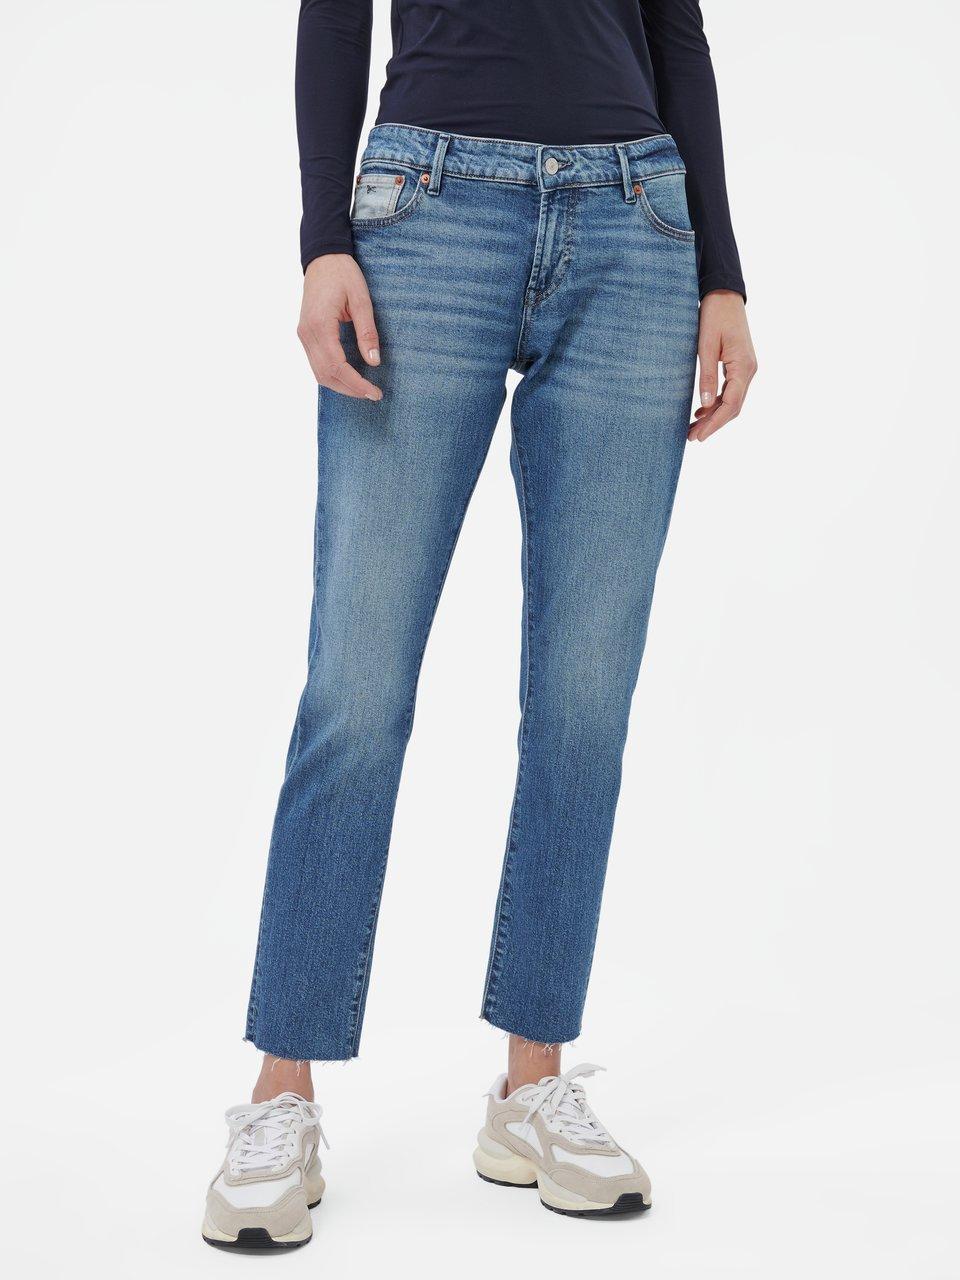 Denham - Jeans 'Monroe' in inchlengte 30